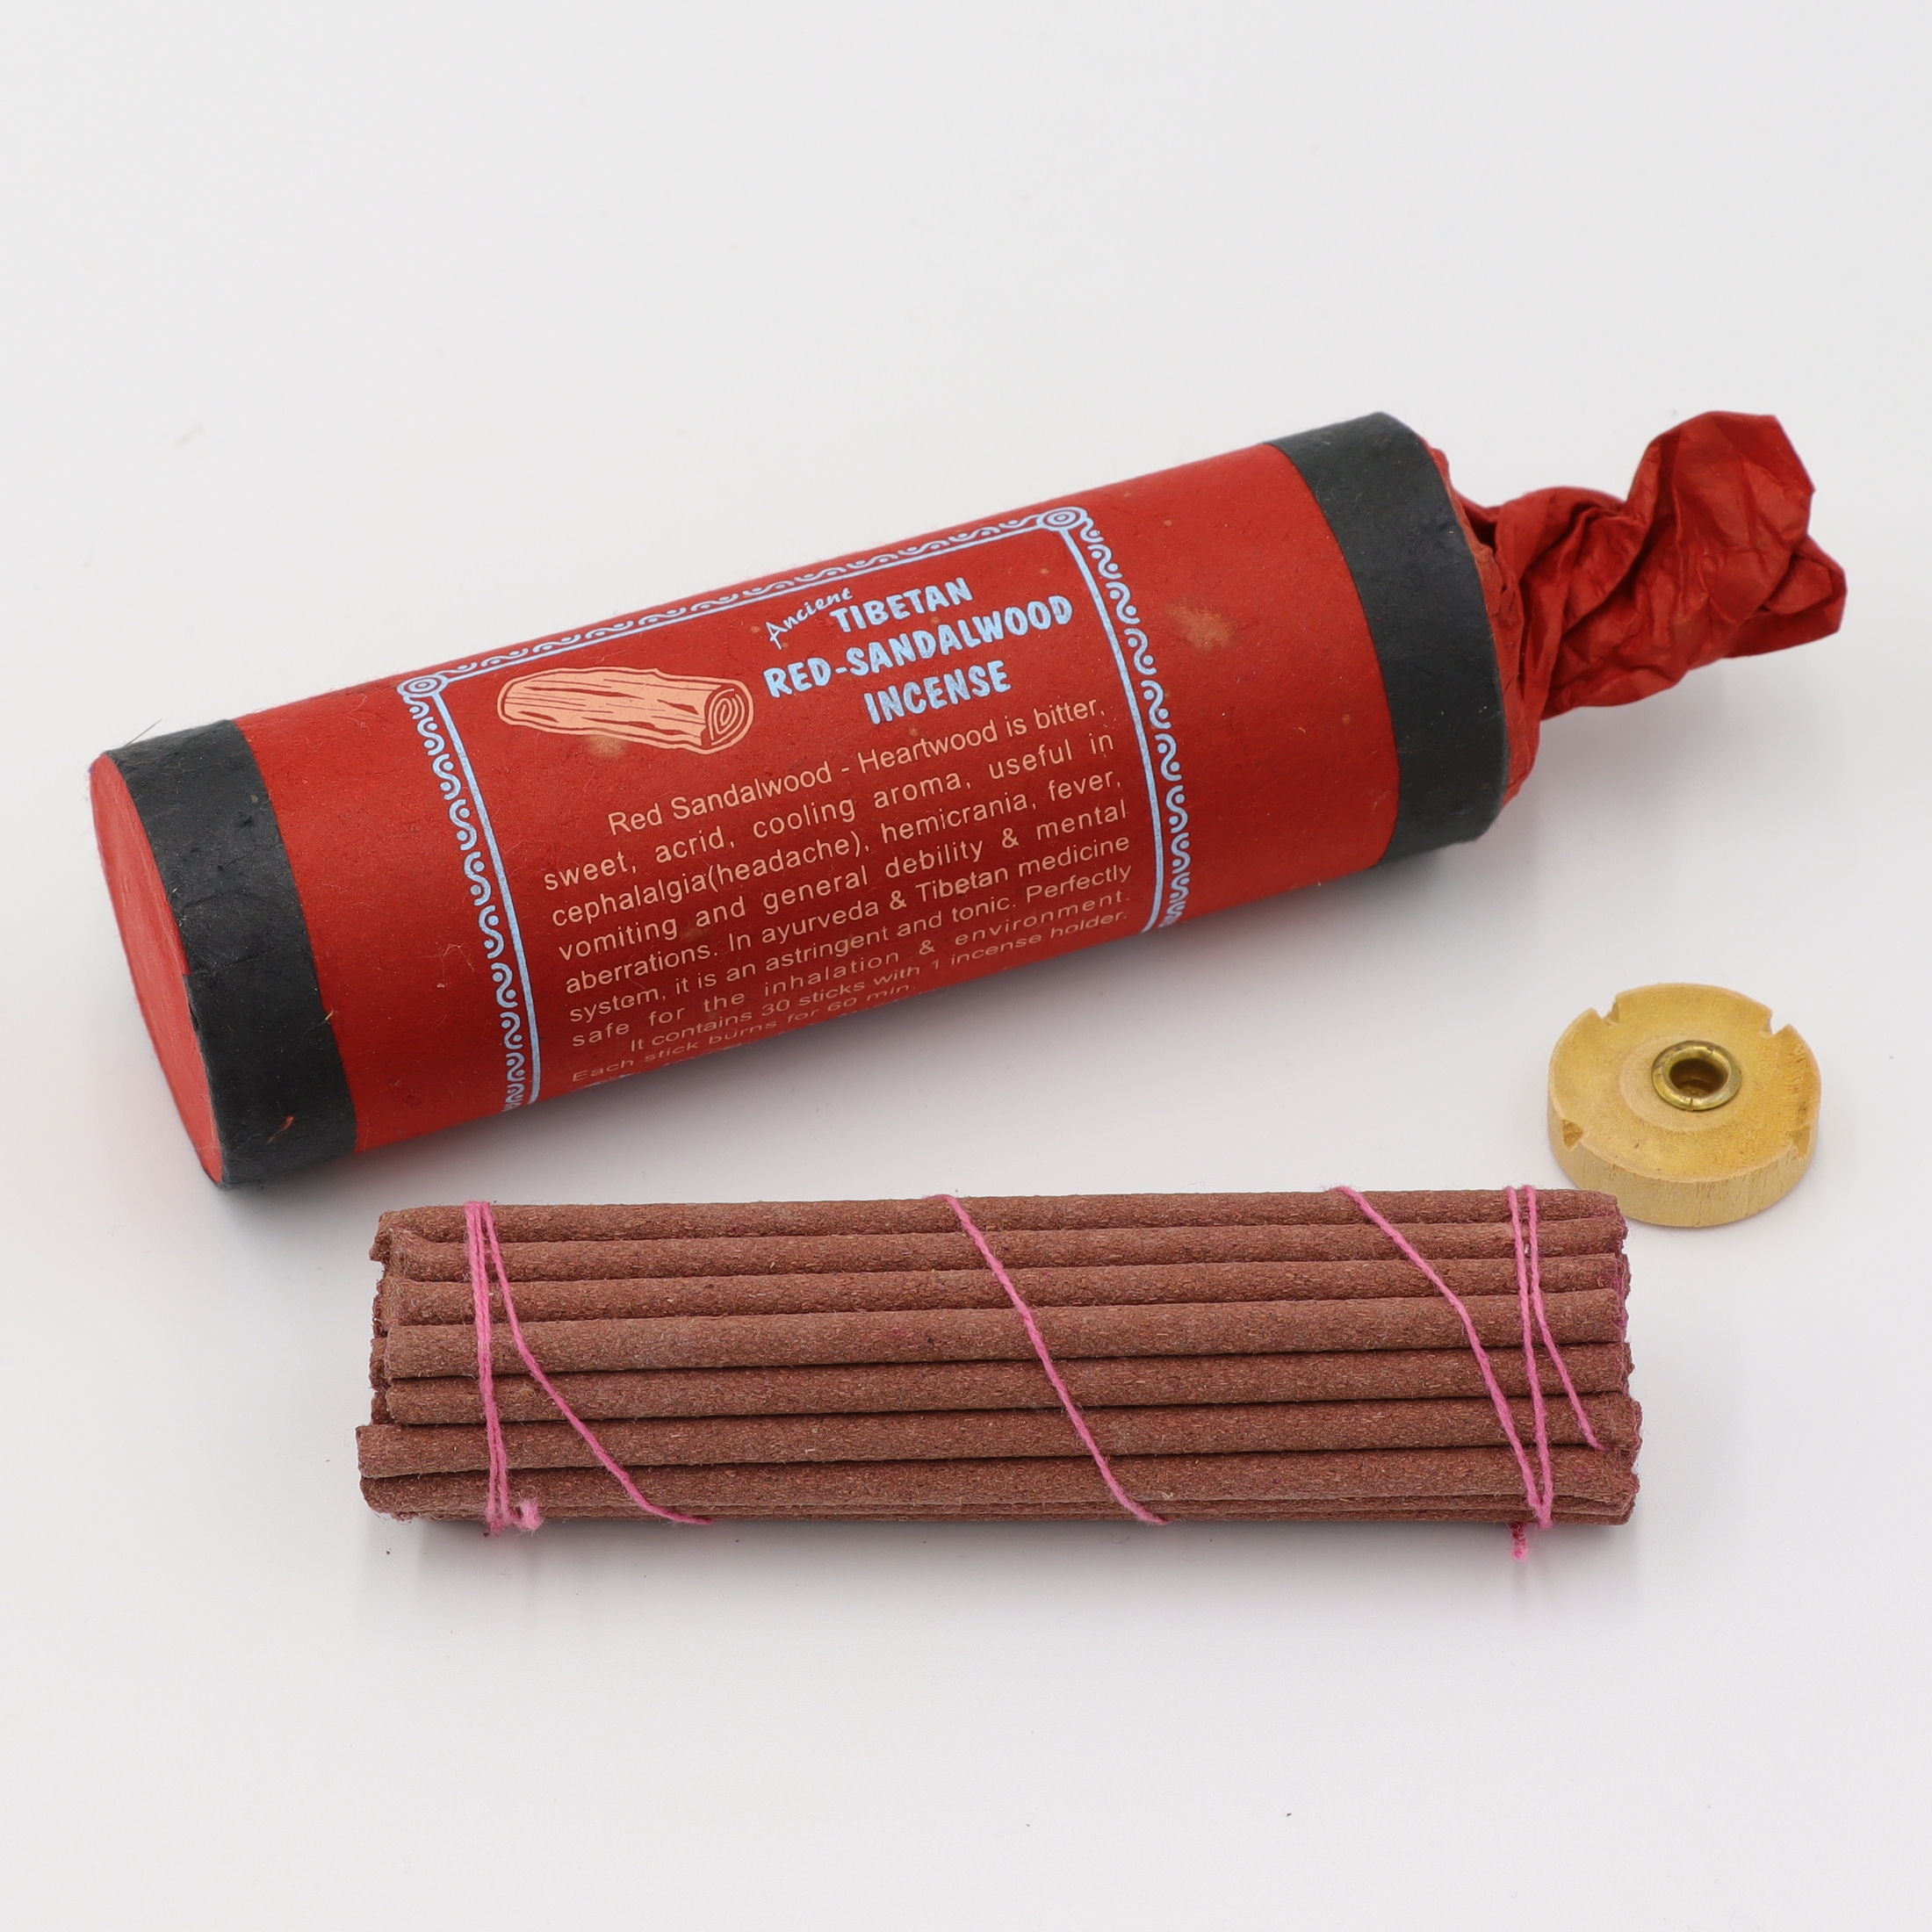 Ancient Tibetan - Red-Sandalwood - Räucherstäbchen von Tibet, handgerollte Duftstäbchen aus rein natürlichen Zutaten nach traditionellem Rezept